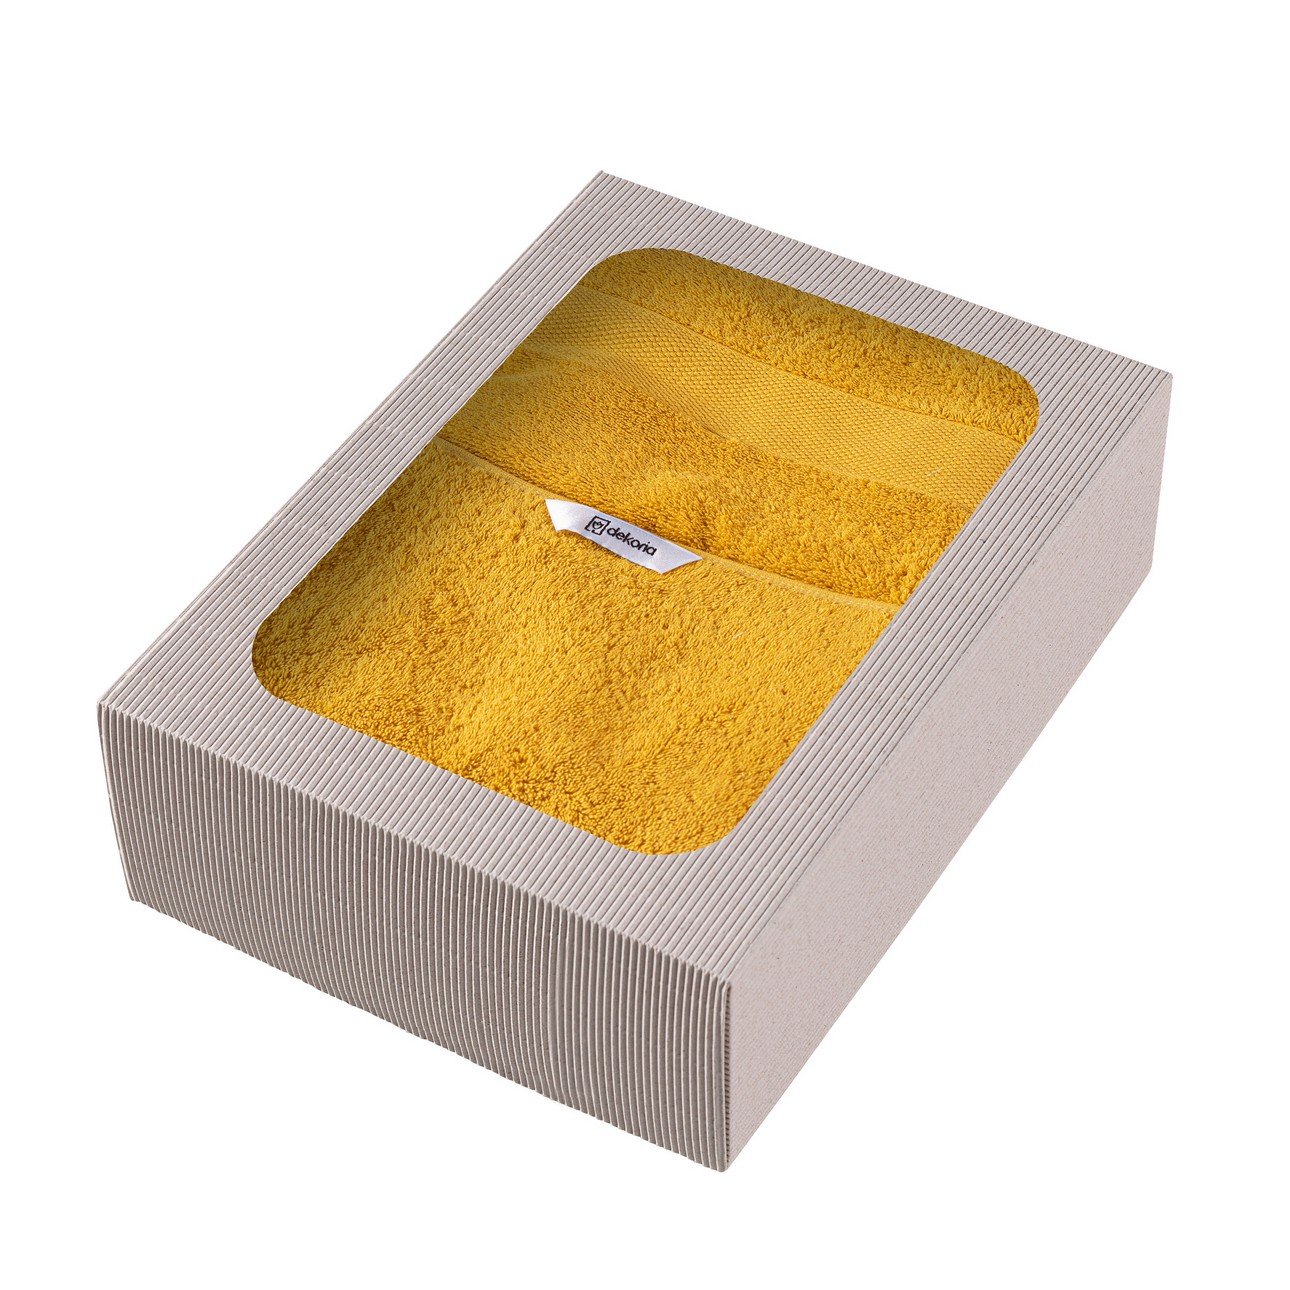 Dekoria Sada 3 ks ručníků Cairo yellow, 2 szt. 50 x 90 cm / 1 szt. 70 x 140 cm